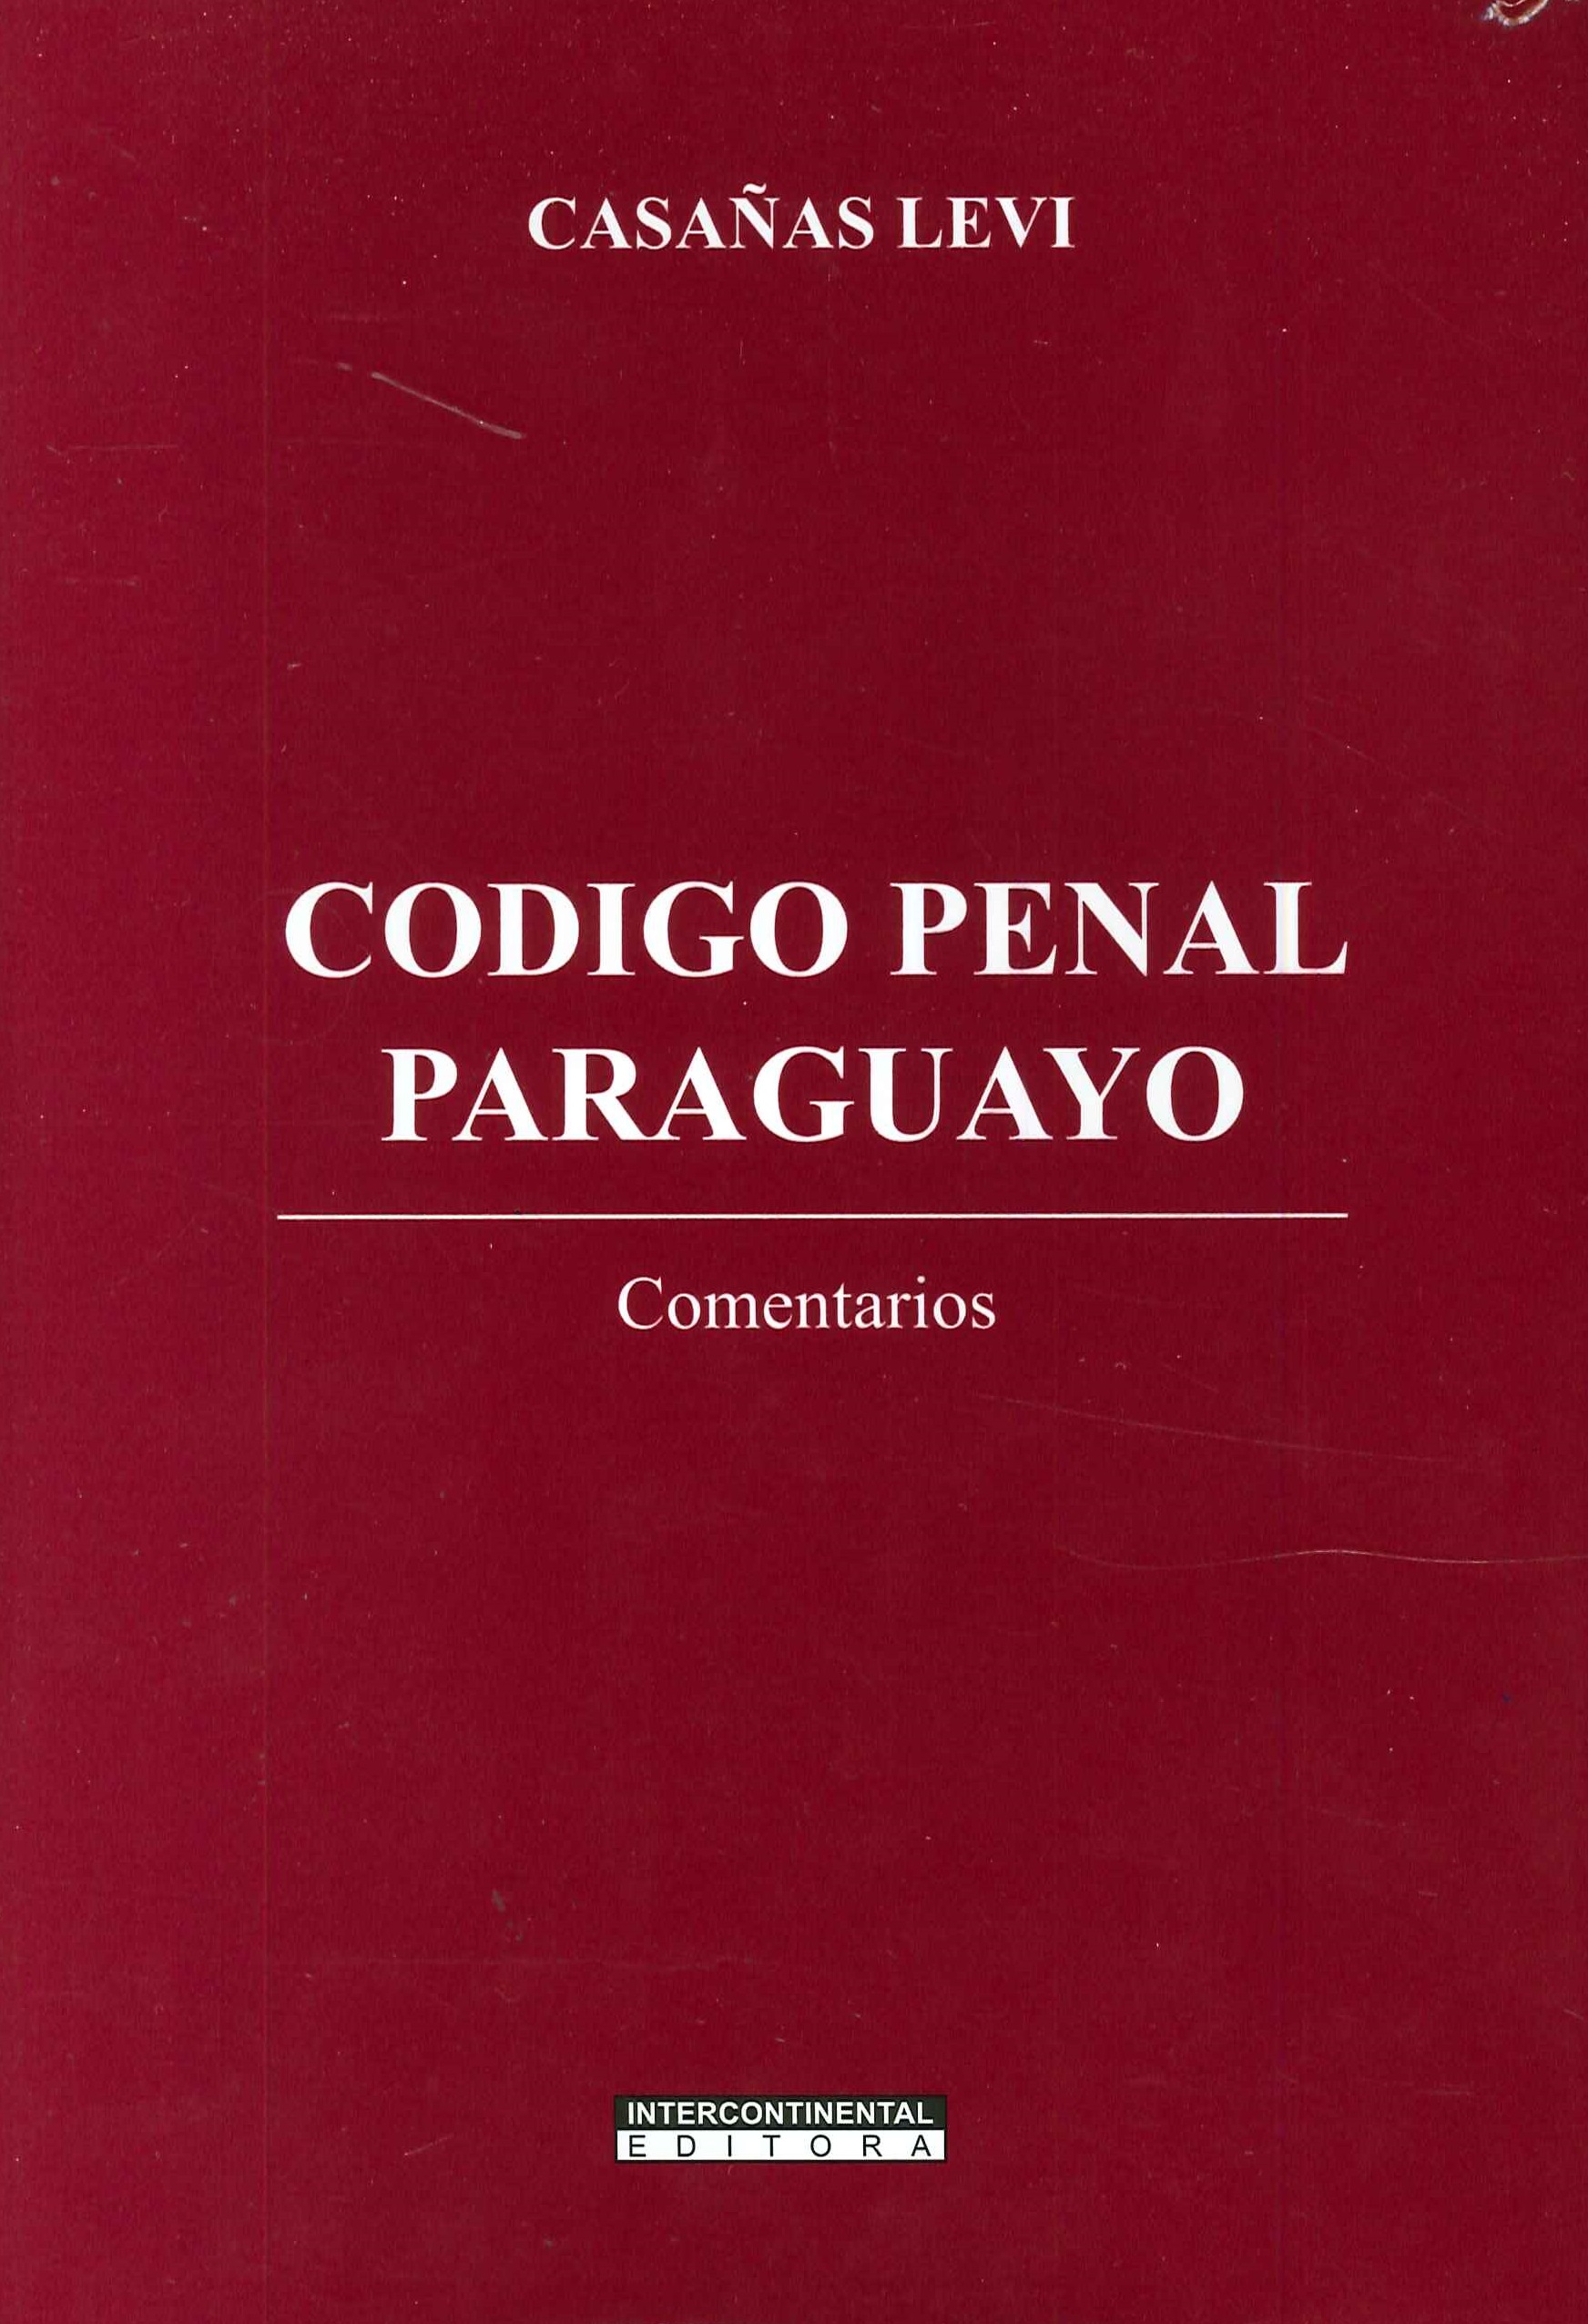 Codigo penal paraguayo